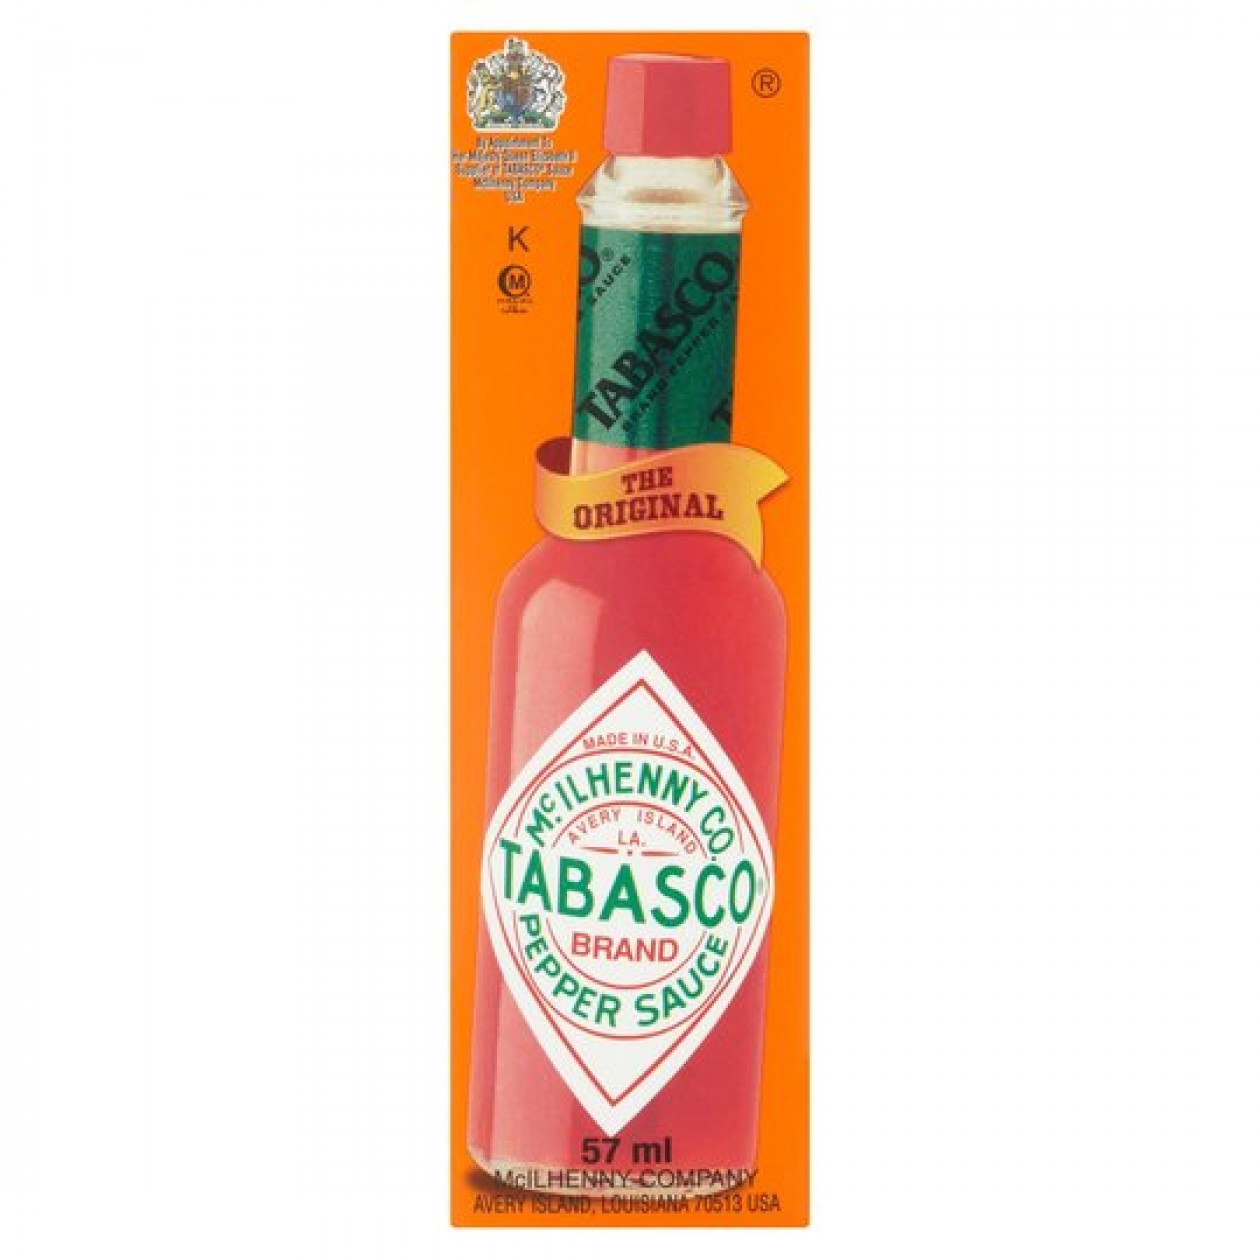 Tabasco Original Red Sauce 57ml x 12